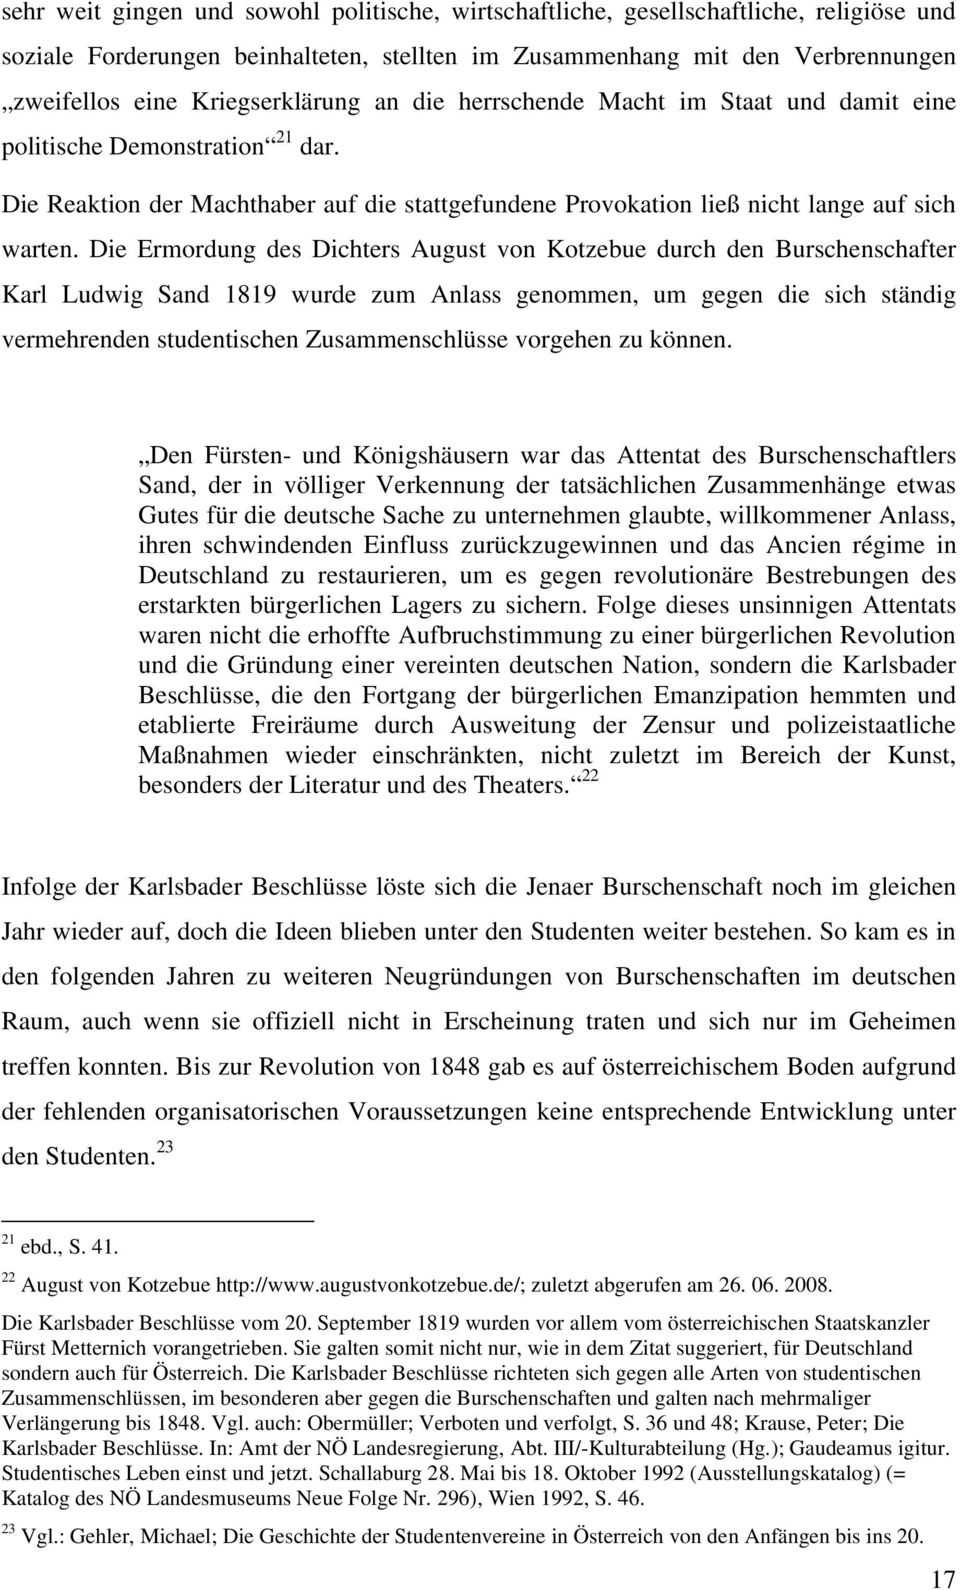 Die Ermordung des Dichters August von Kotzebue durch den Burschenschafter Karl Ludwig Sand 1819 wurde zum Anlass genommen, um gegen die sich ständig vermehrenden studentischen Zusammenschlüsse